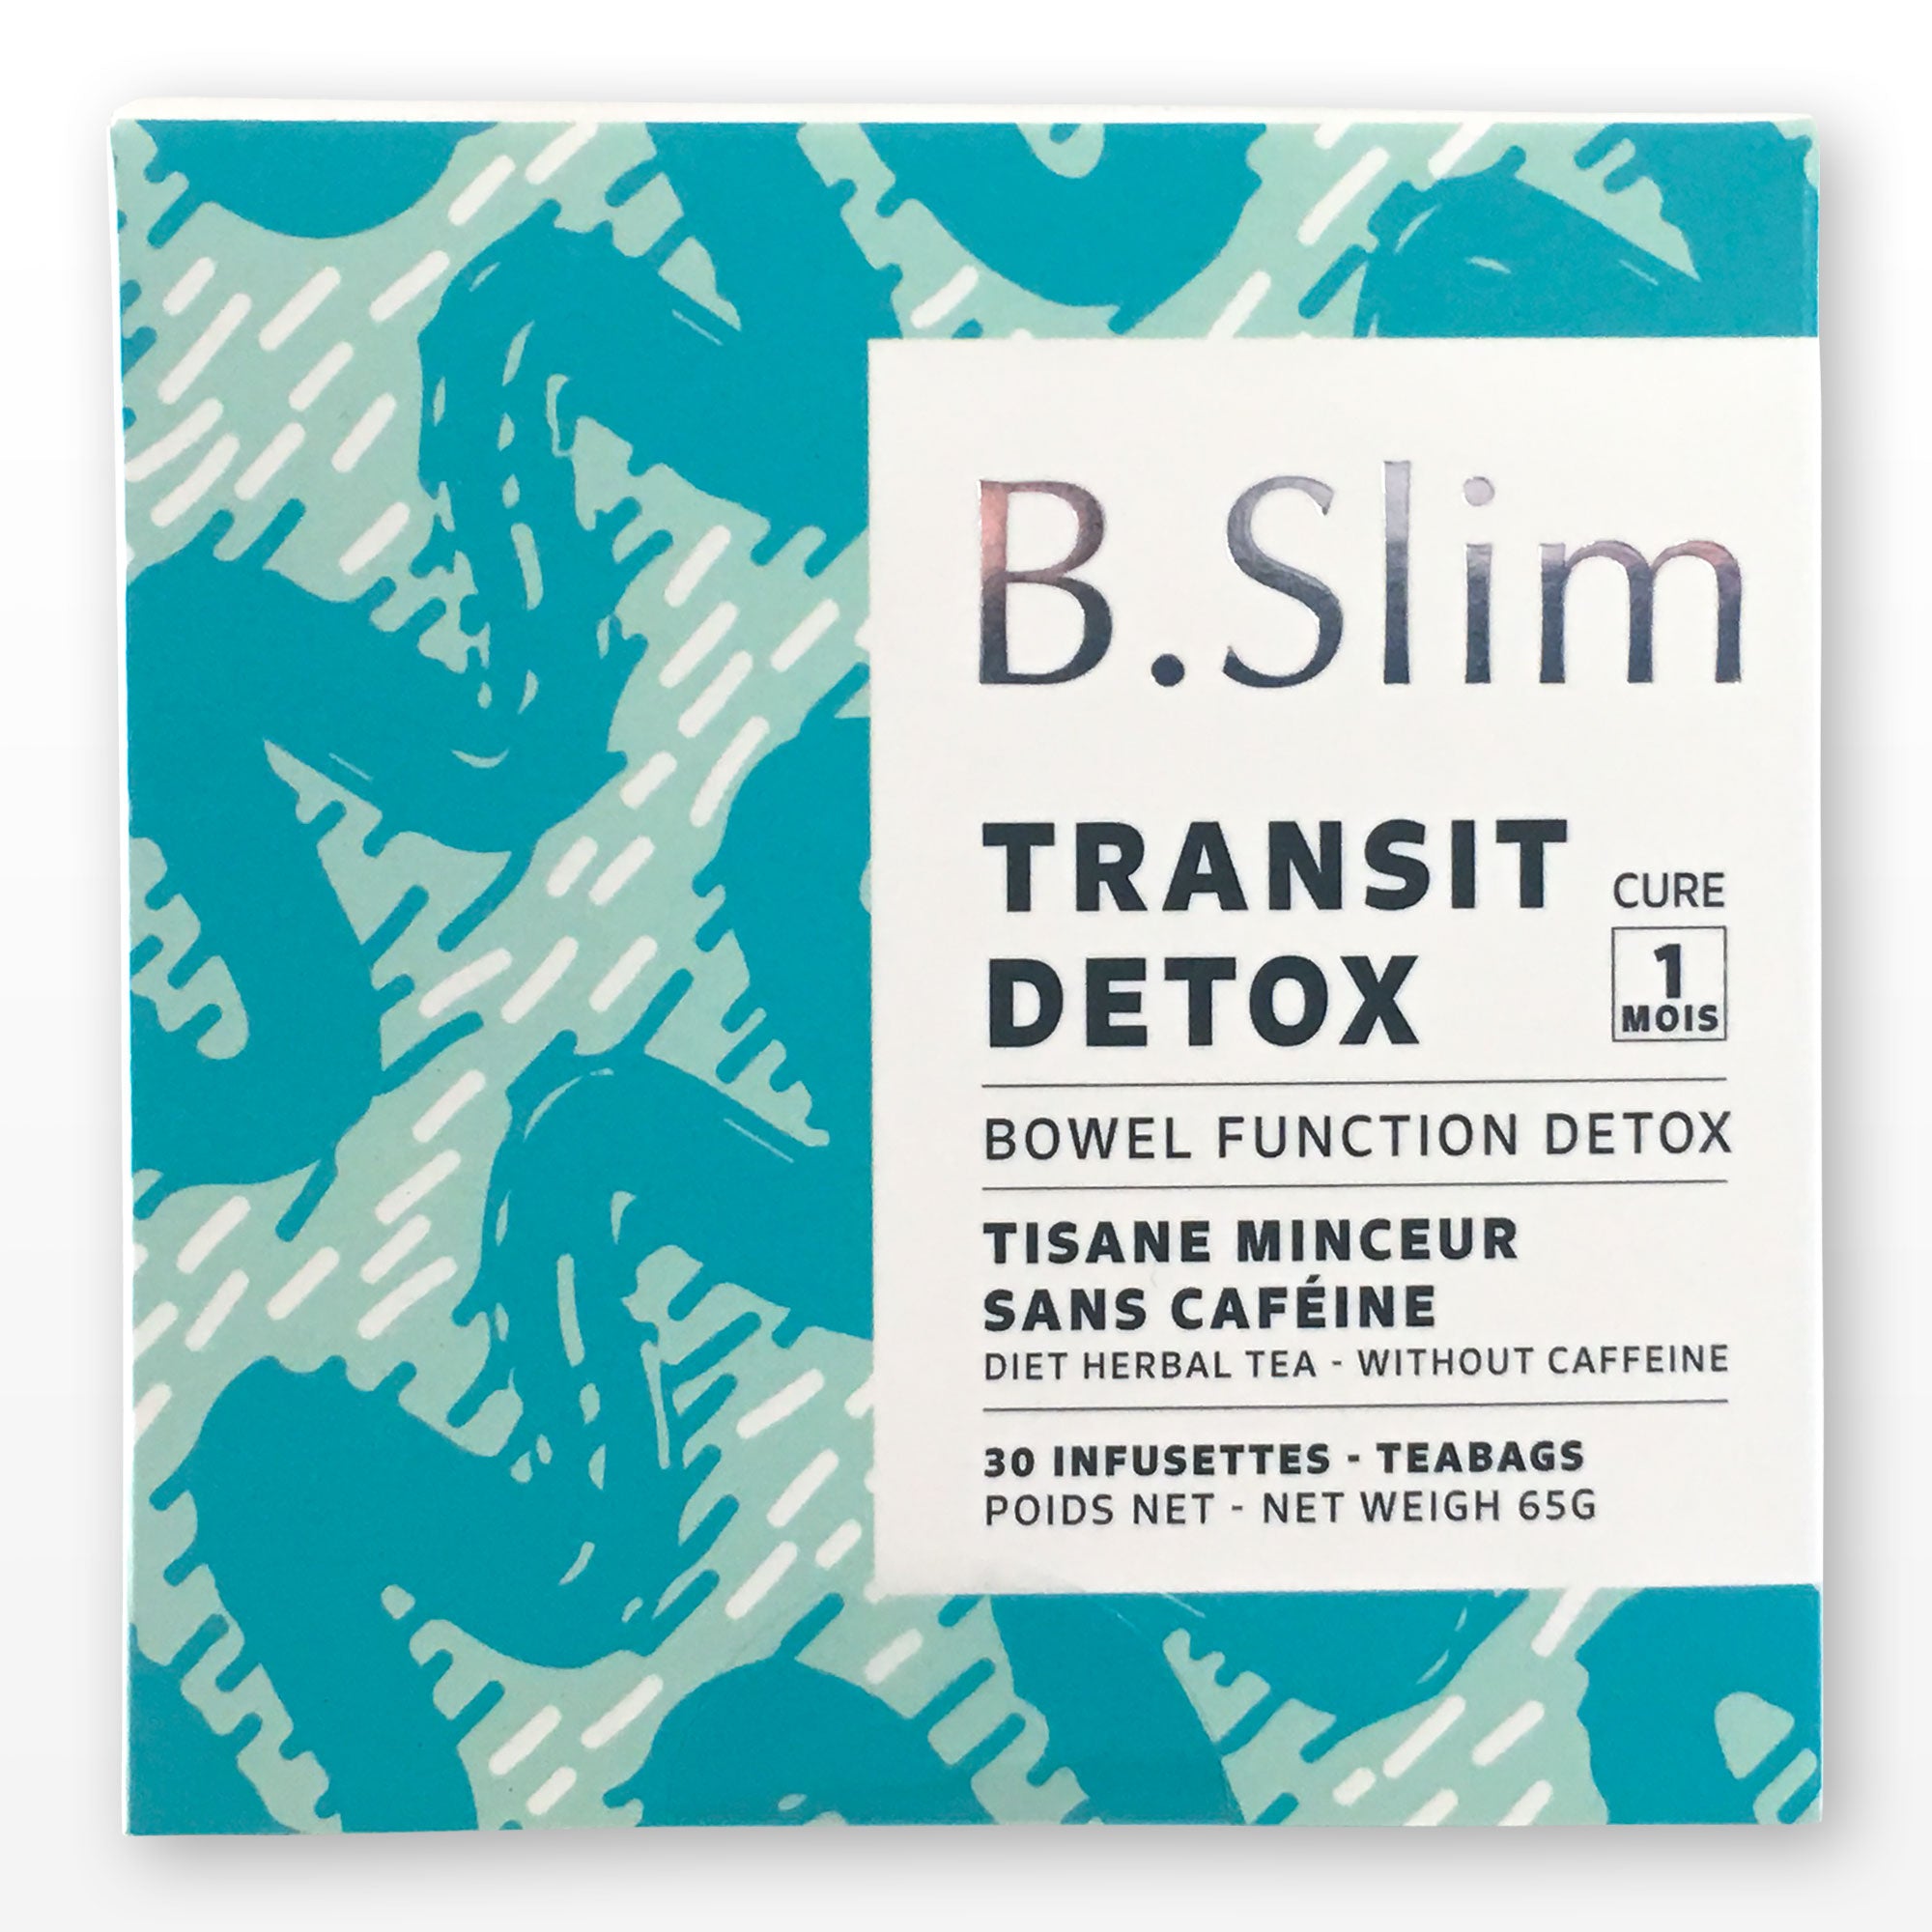 B.SLIM Tisane transit Detox